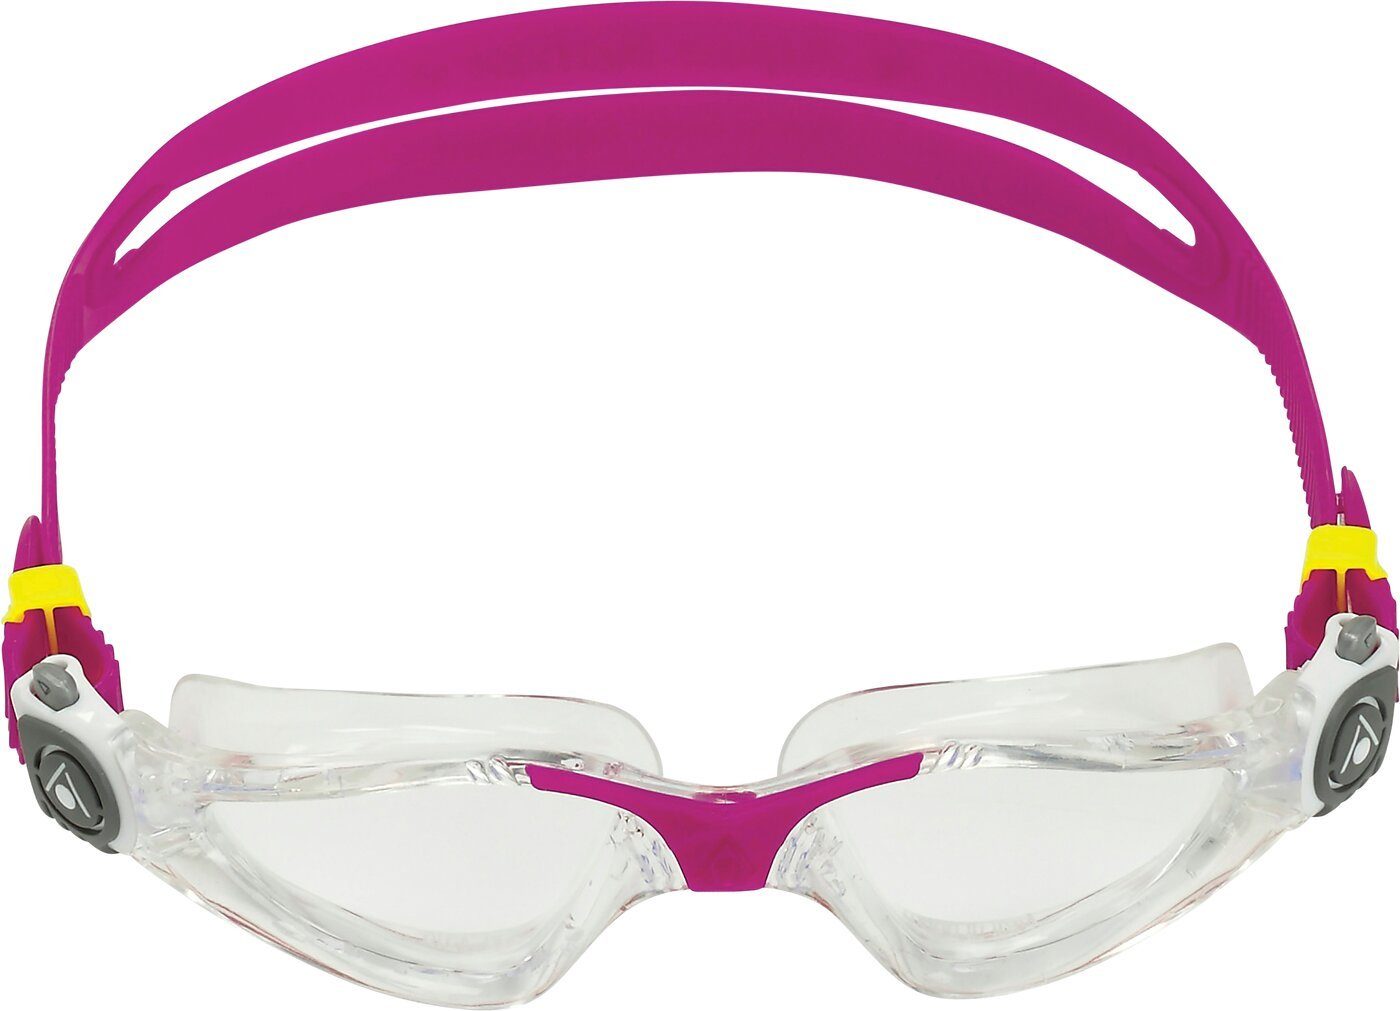 Aqua Sphere Brillen online kaufen | OTTO